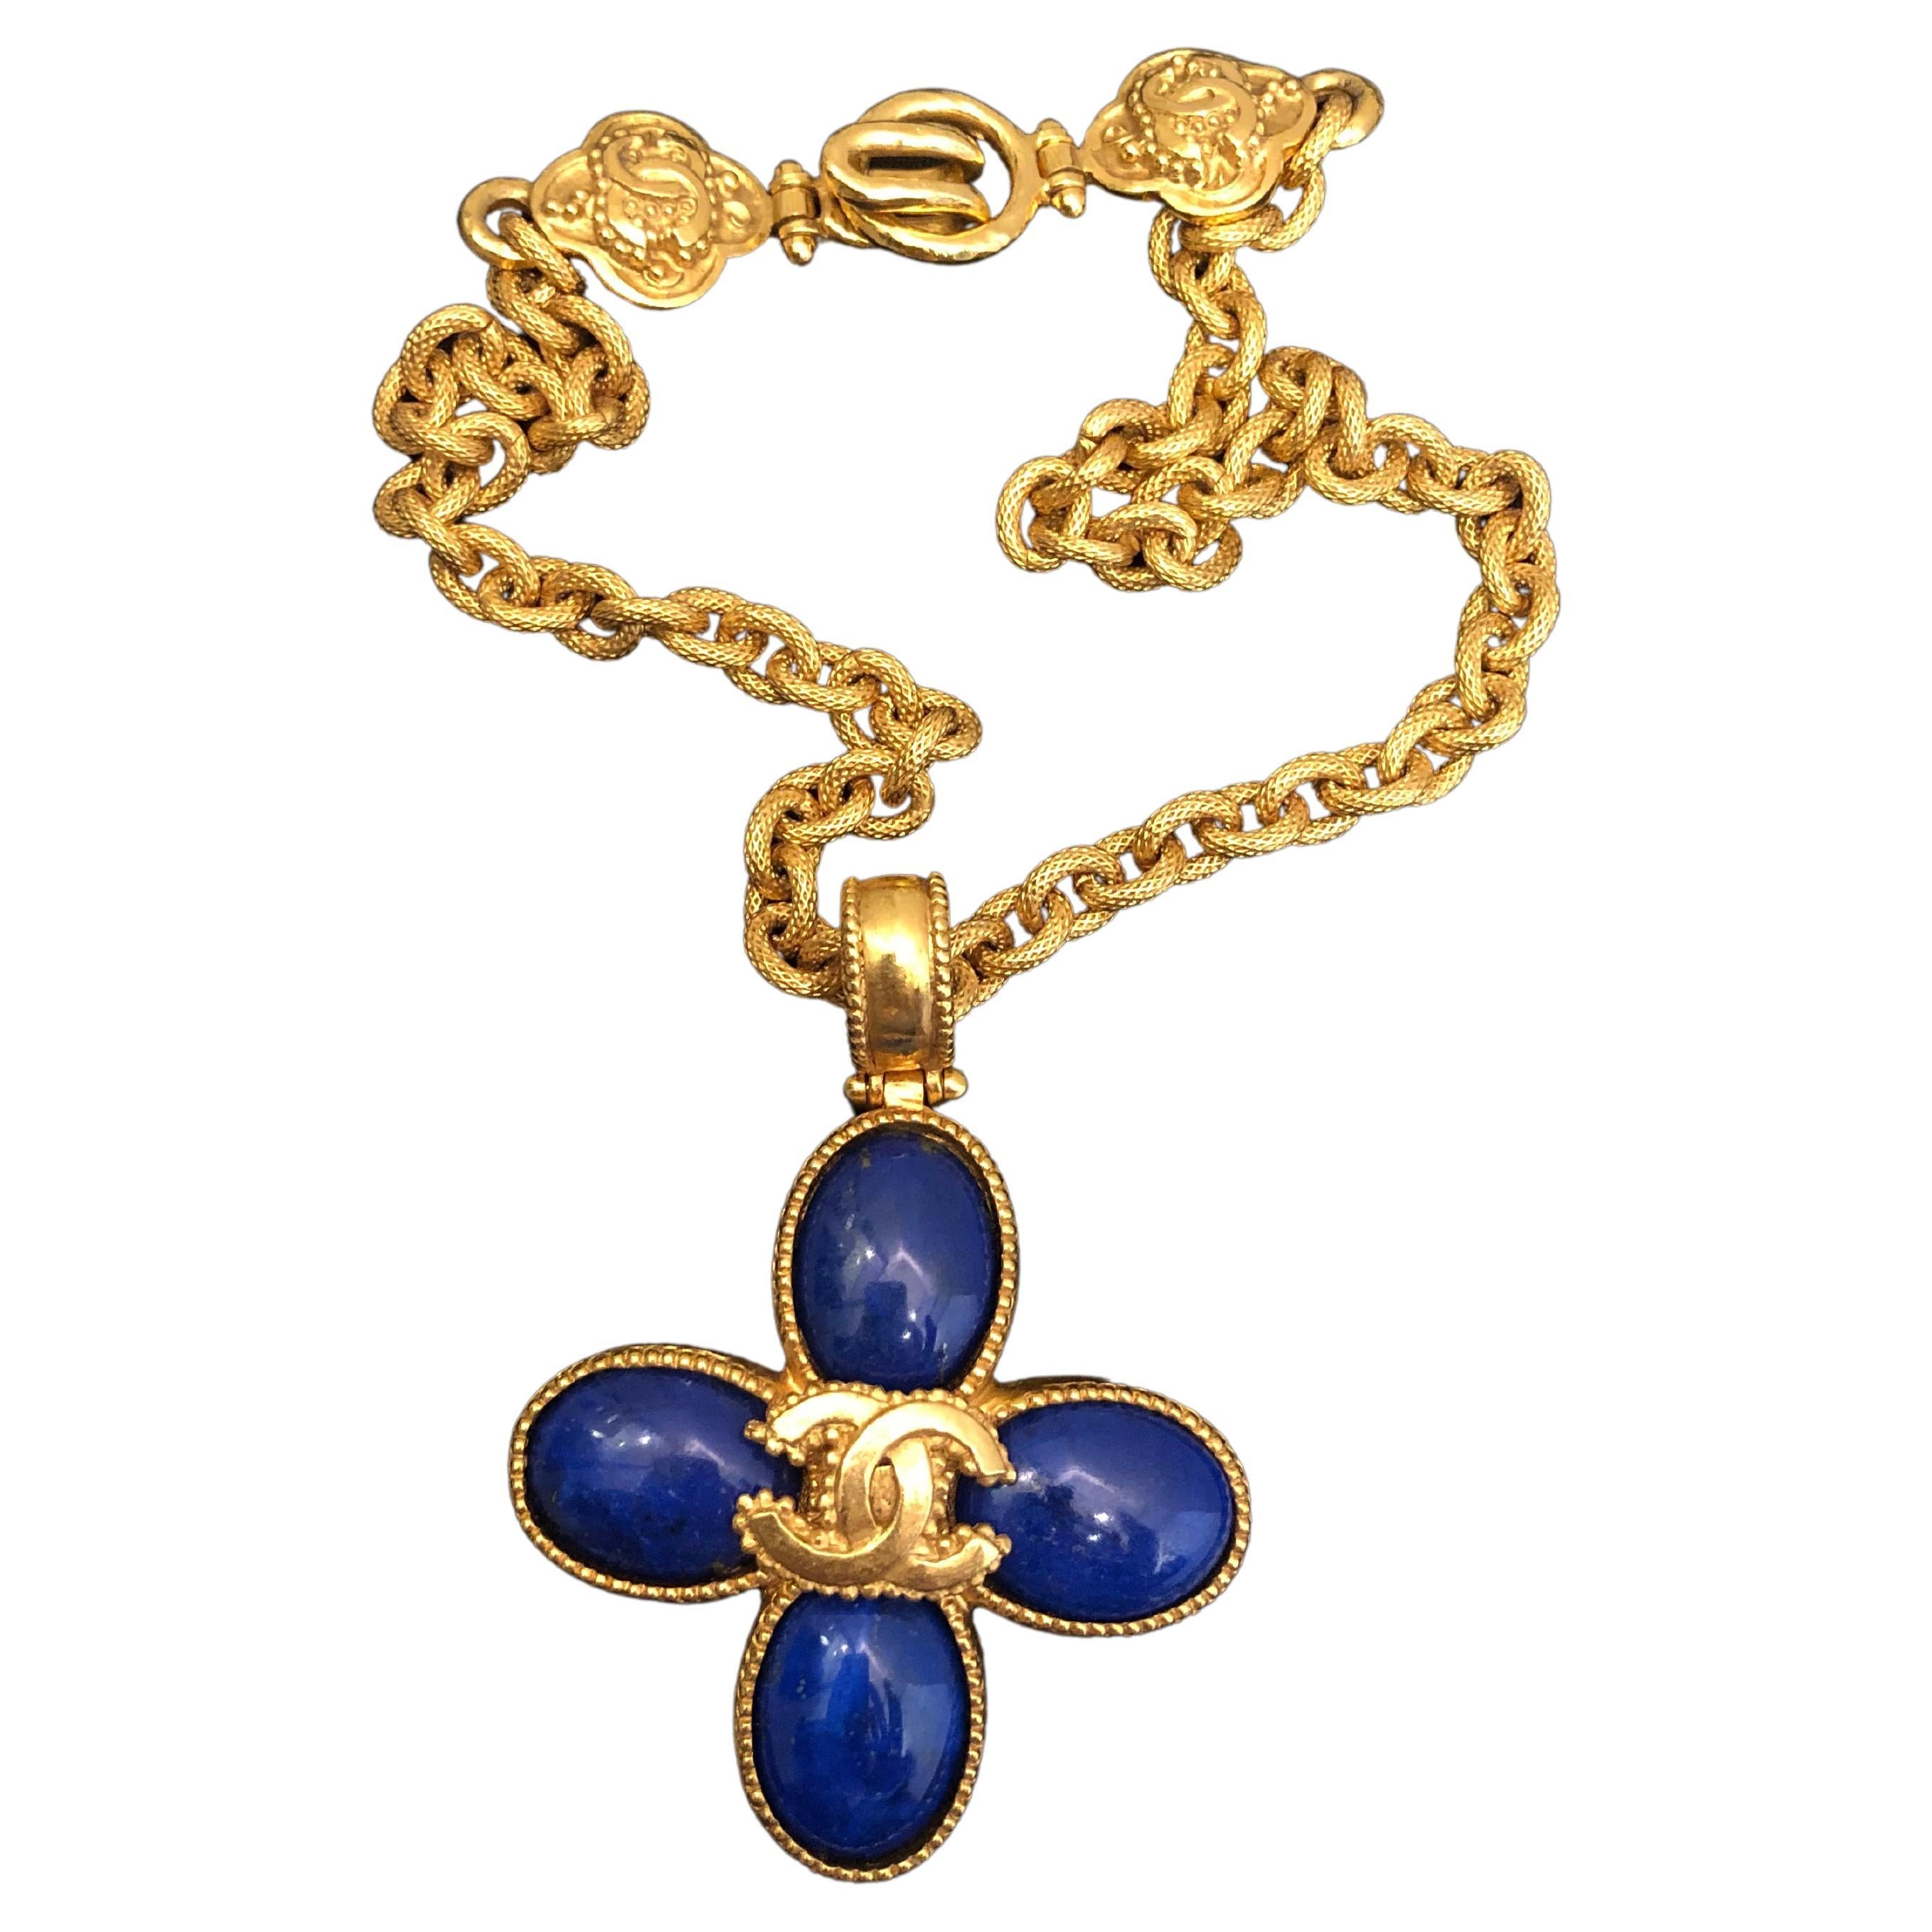 Vintage CHANEL Blue Lapis Lazuli Clover Gold Toned CC Chain Necklace